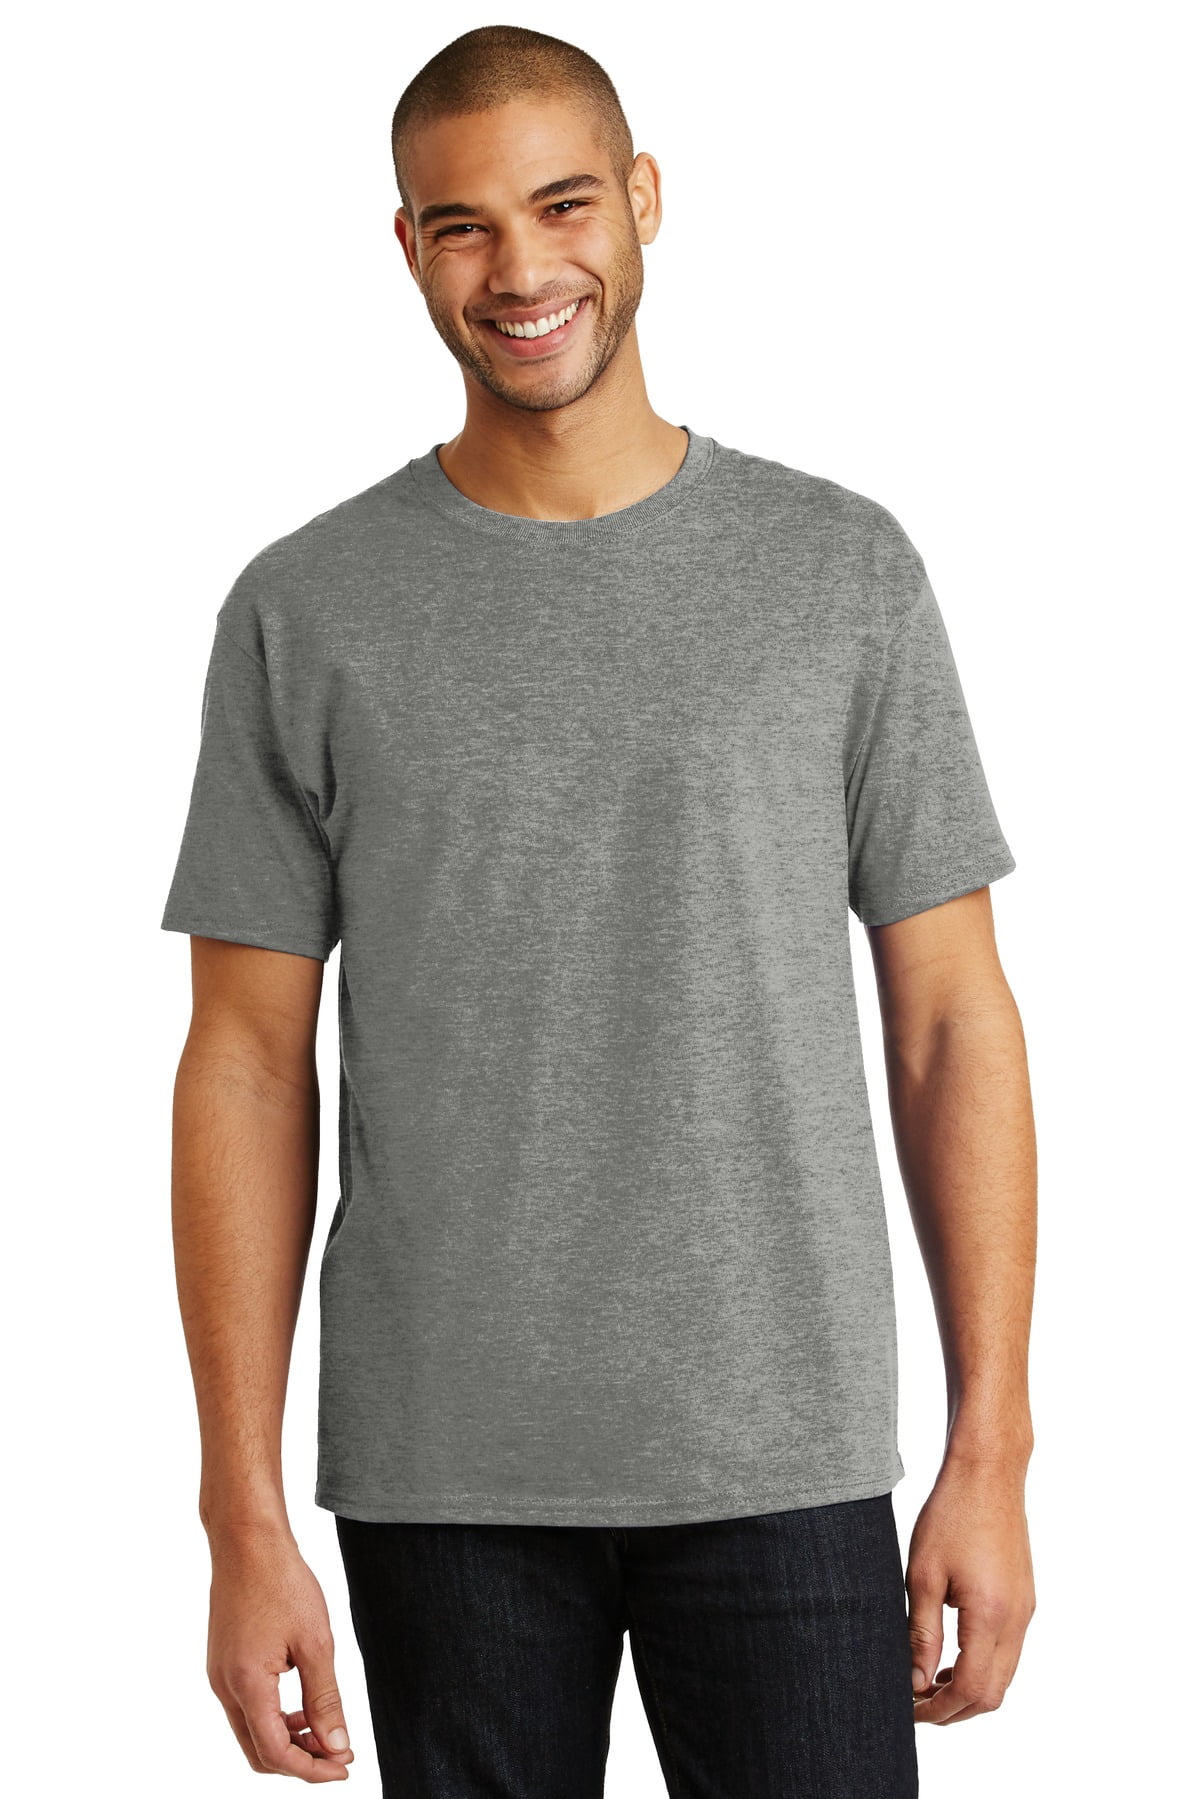 Hanes Men's 100 Percent Cotton Tagless T-Shirt. 5250 - Walmart.com